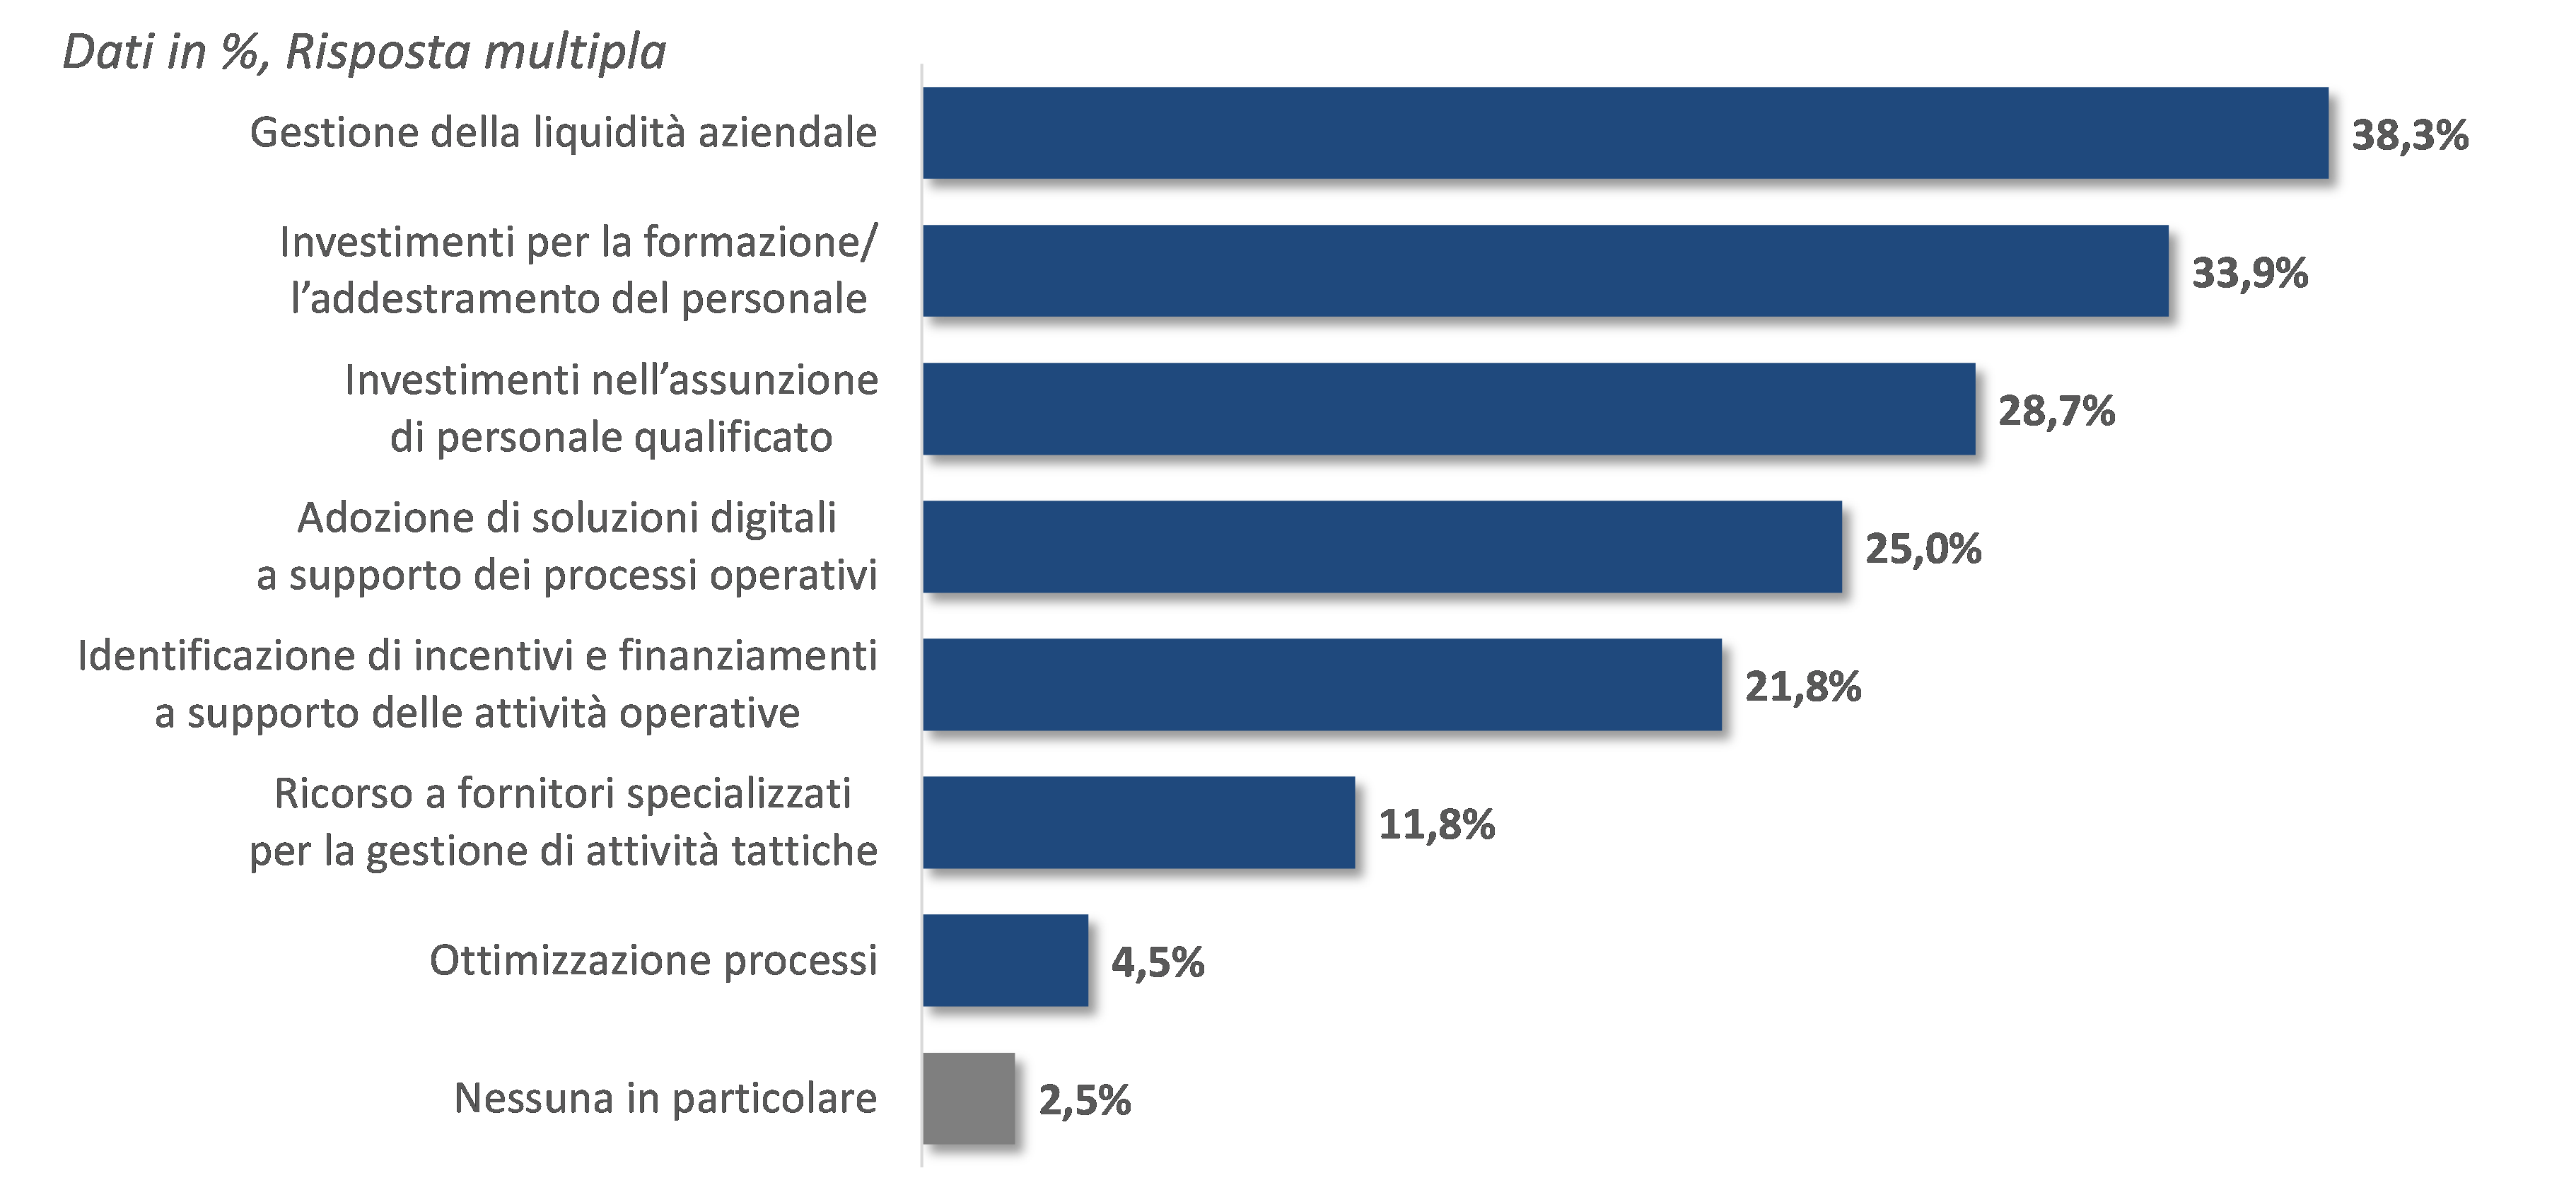 Le aree di azione a supporto delle priorità delle aziende intervistate - Fonte: elaborazioni NetConsulting cube, 2022